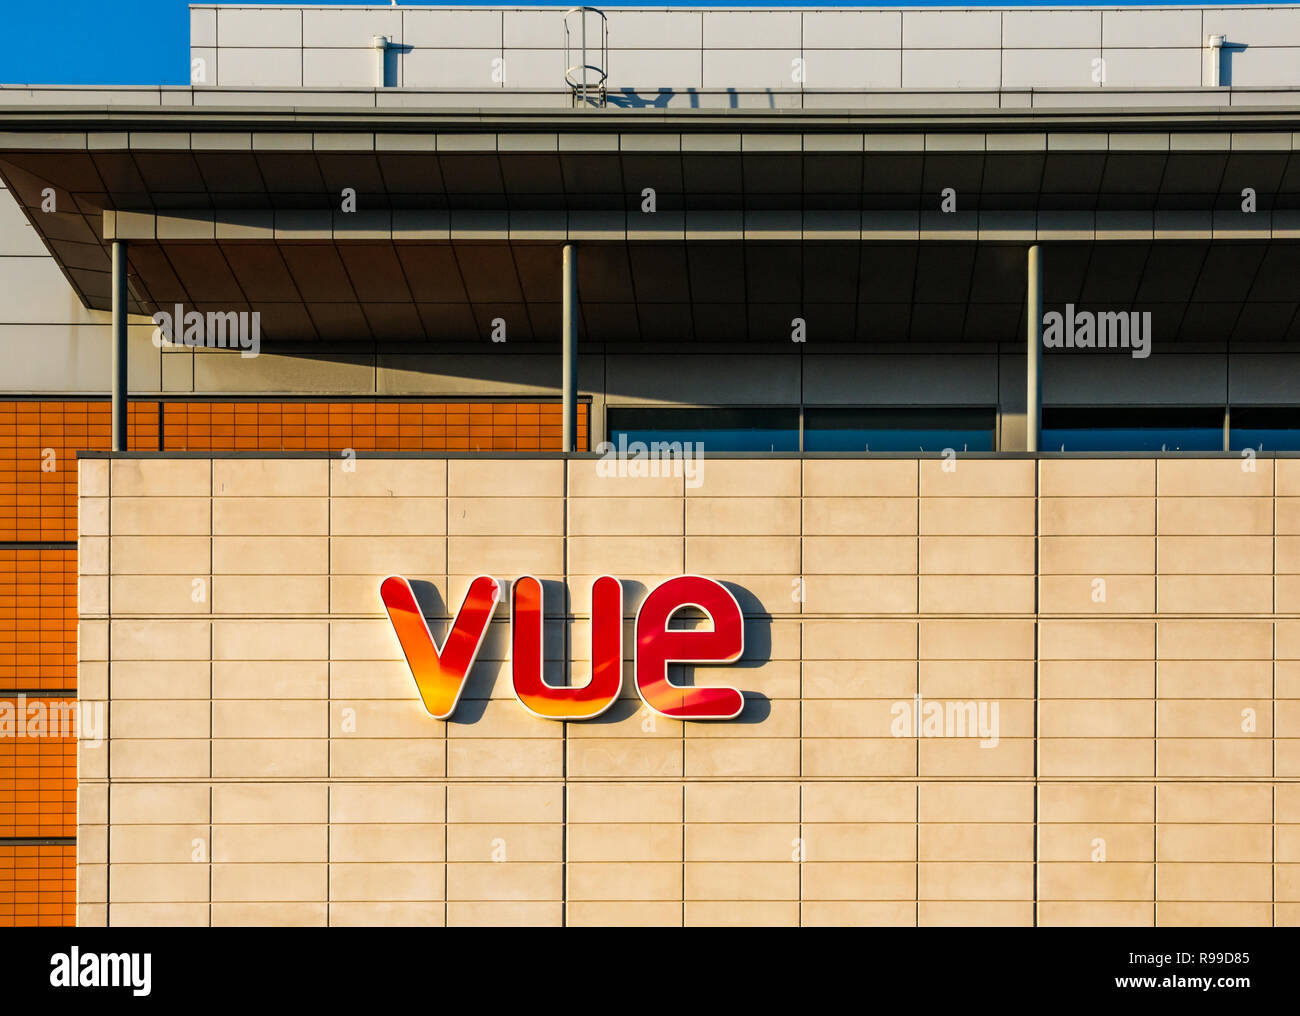 Vue cinema logo and name on front of Ocean Terminal shopping centre, Leith, Edinburgh, Scotland, UK Stock Photo